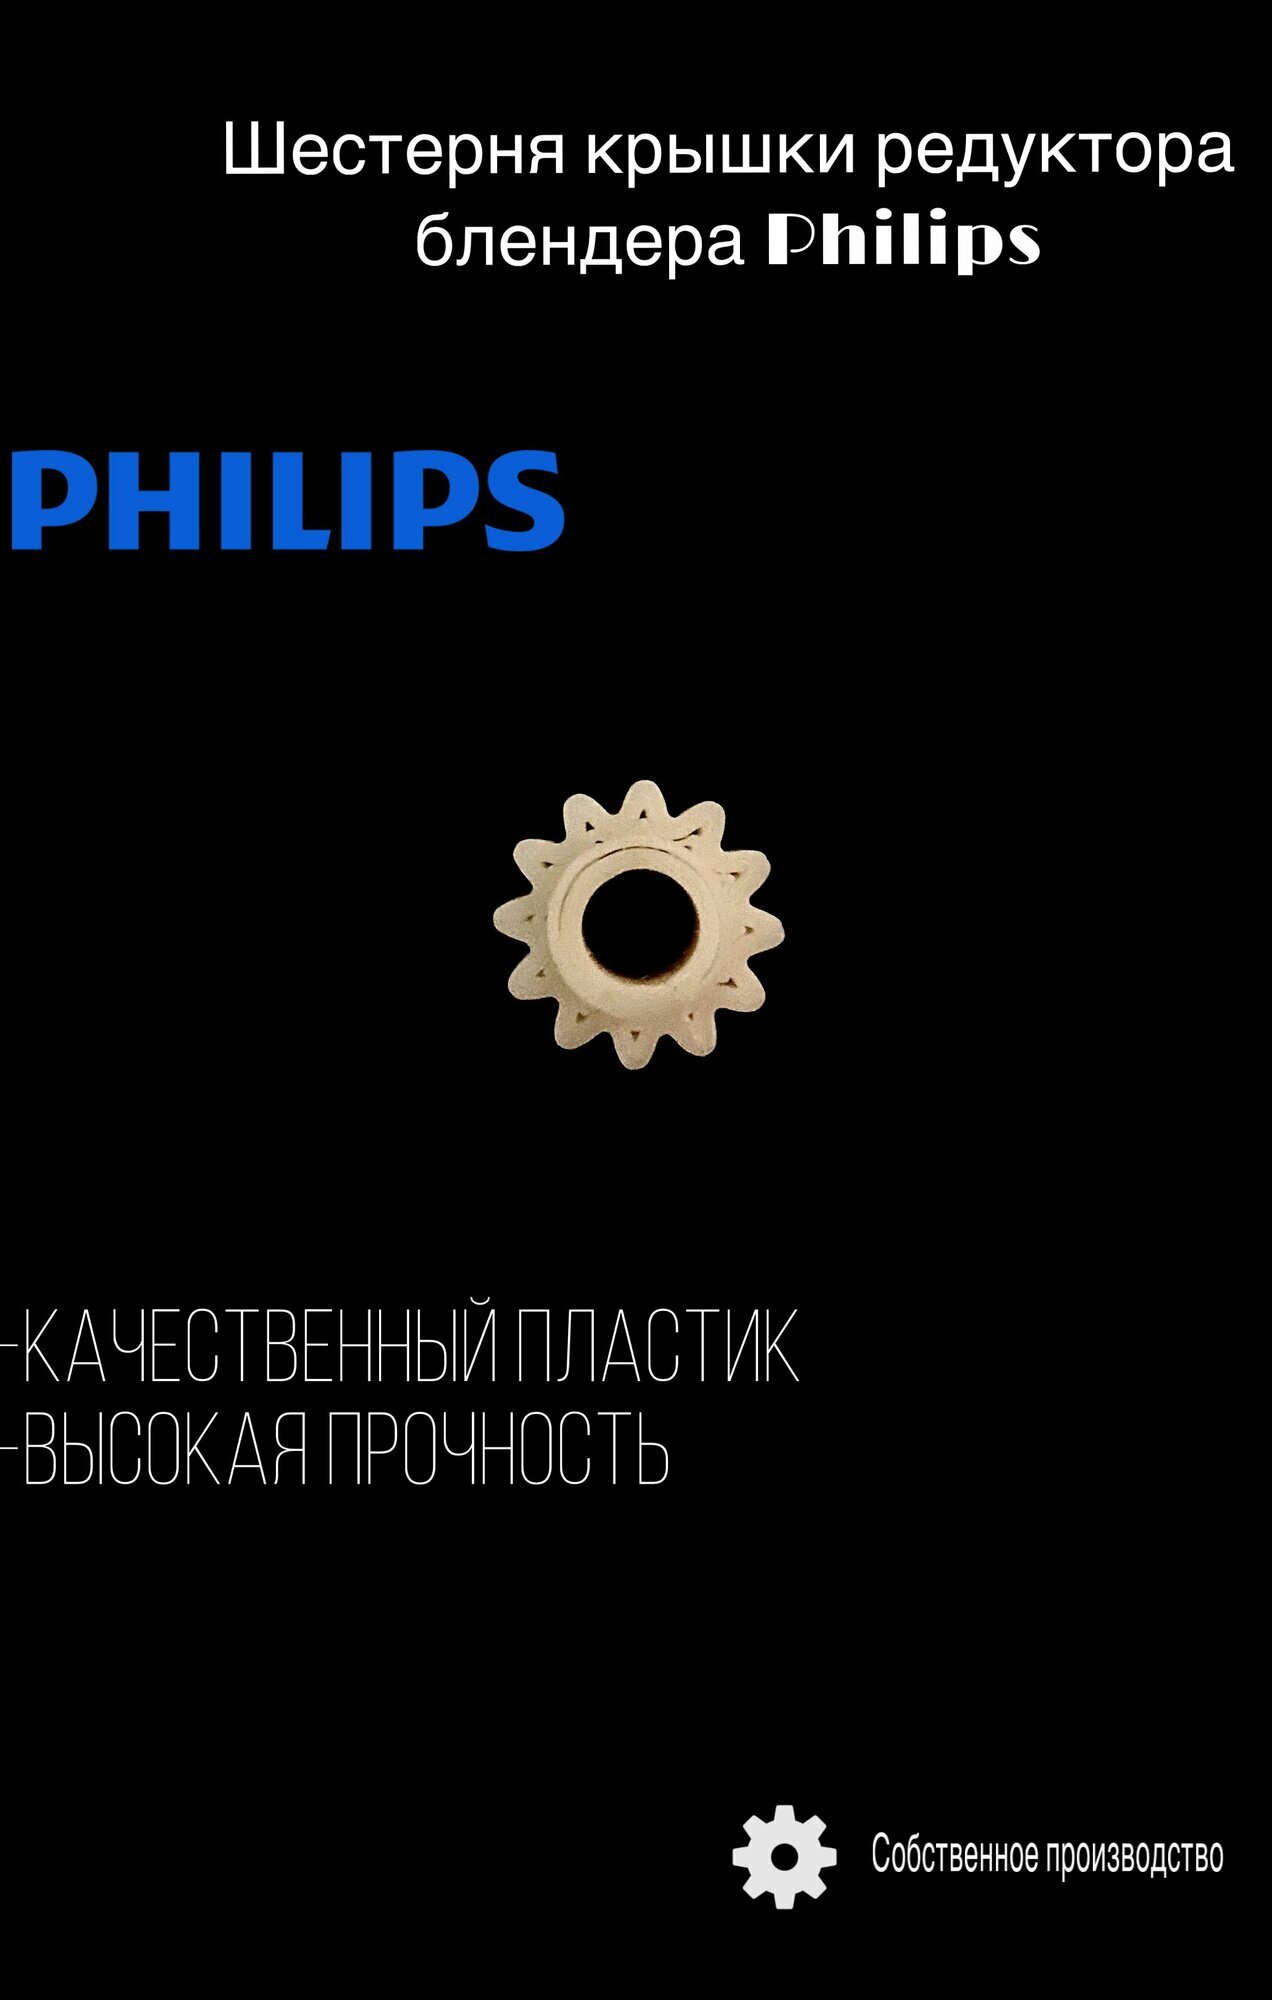 Шестерня редуктора (центральная) для блендера Philips/PHI01UN (комплект 2 шт)